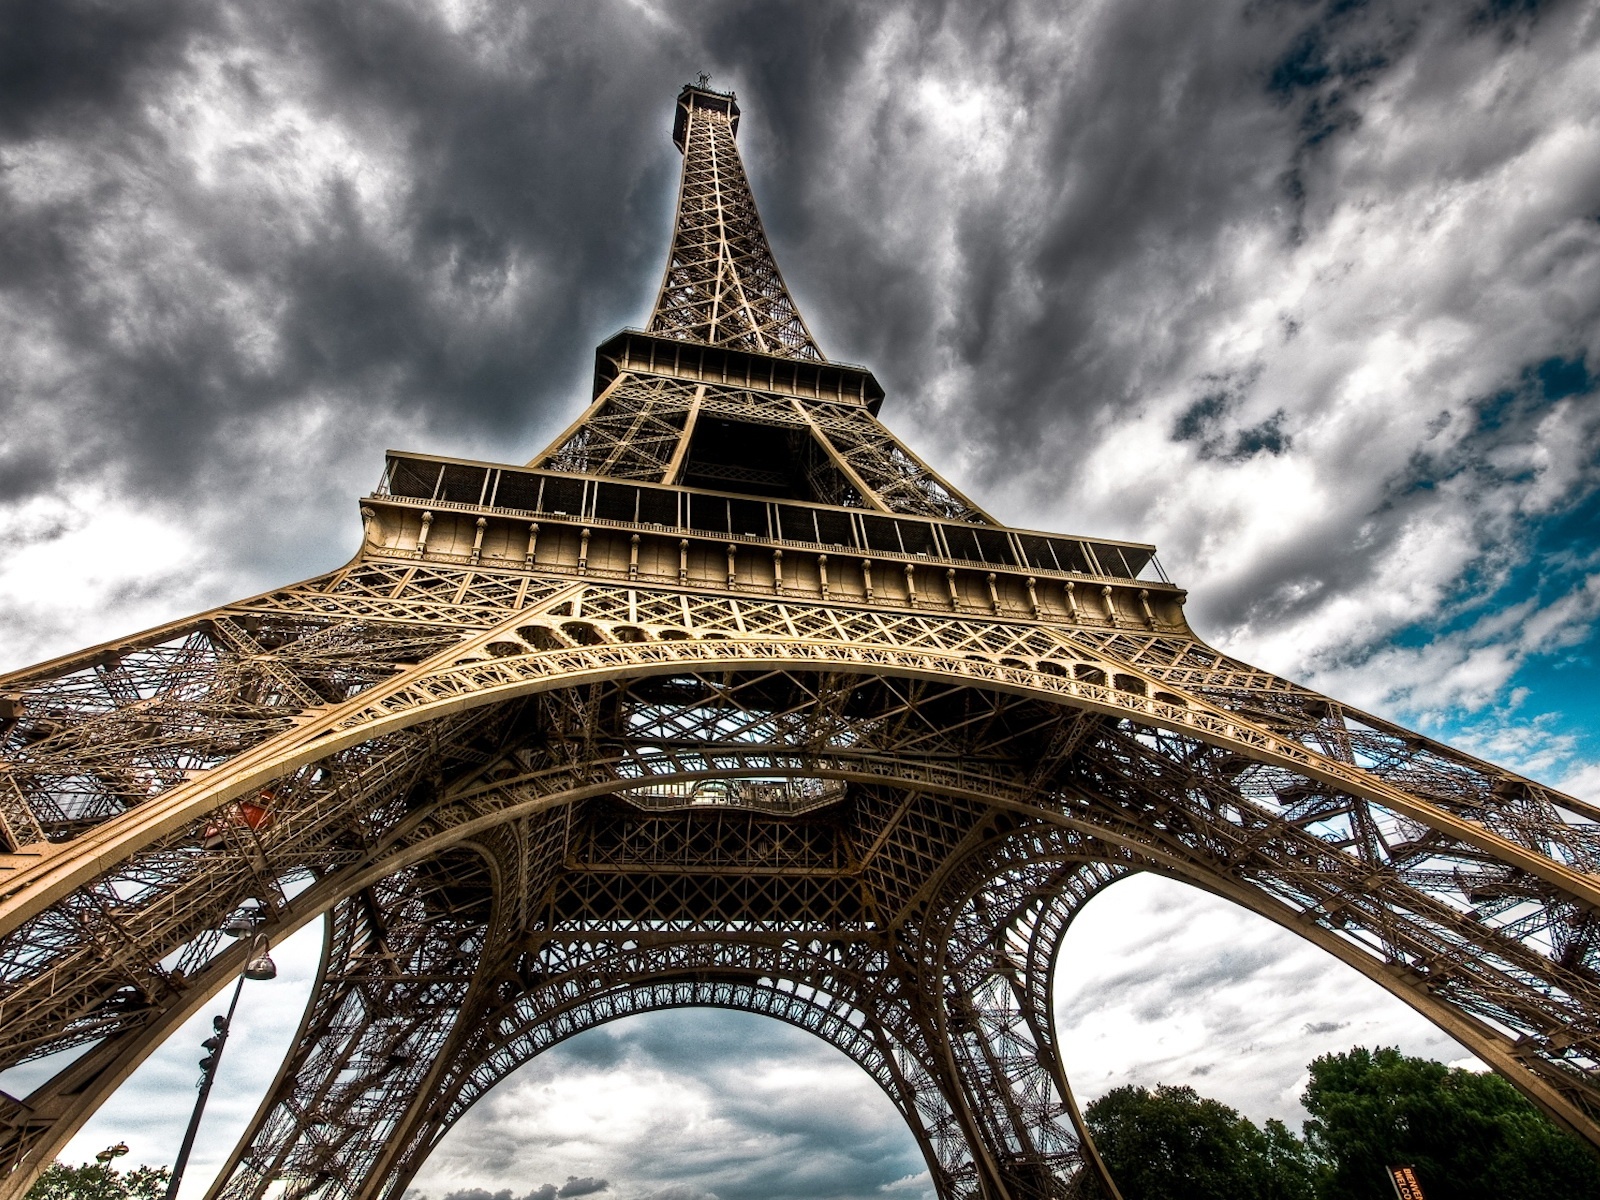 Fond d'ecran Tour Eiffel dans grisaille